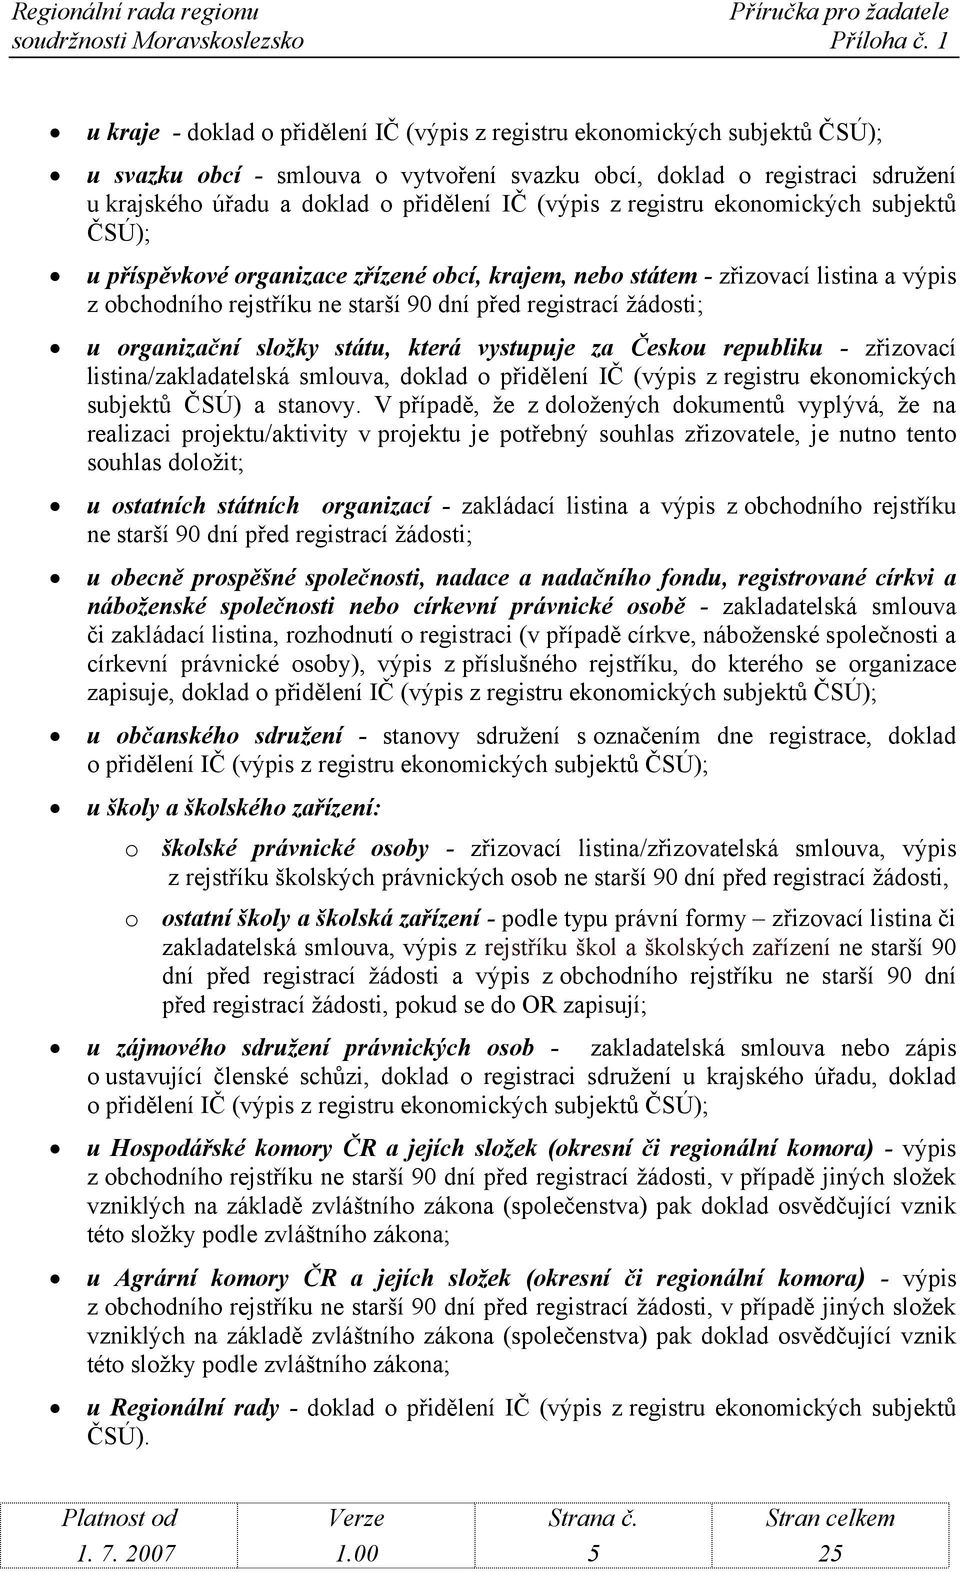 organizační složky státu, která vystupuje za Českou republiku - zřizovací listina/zakladatelská smlouva, doklad o přidělení IČ (výpis z registru ekonomických subjektů ČSÚ) a stanovy.